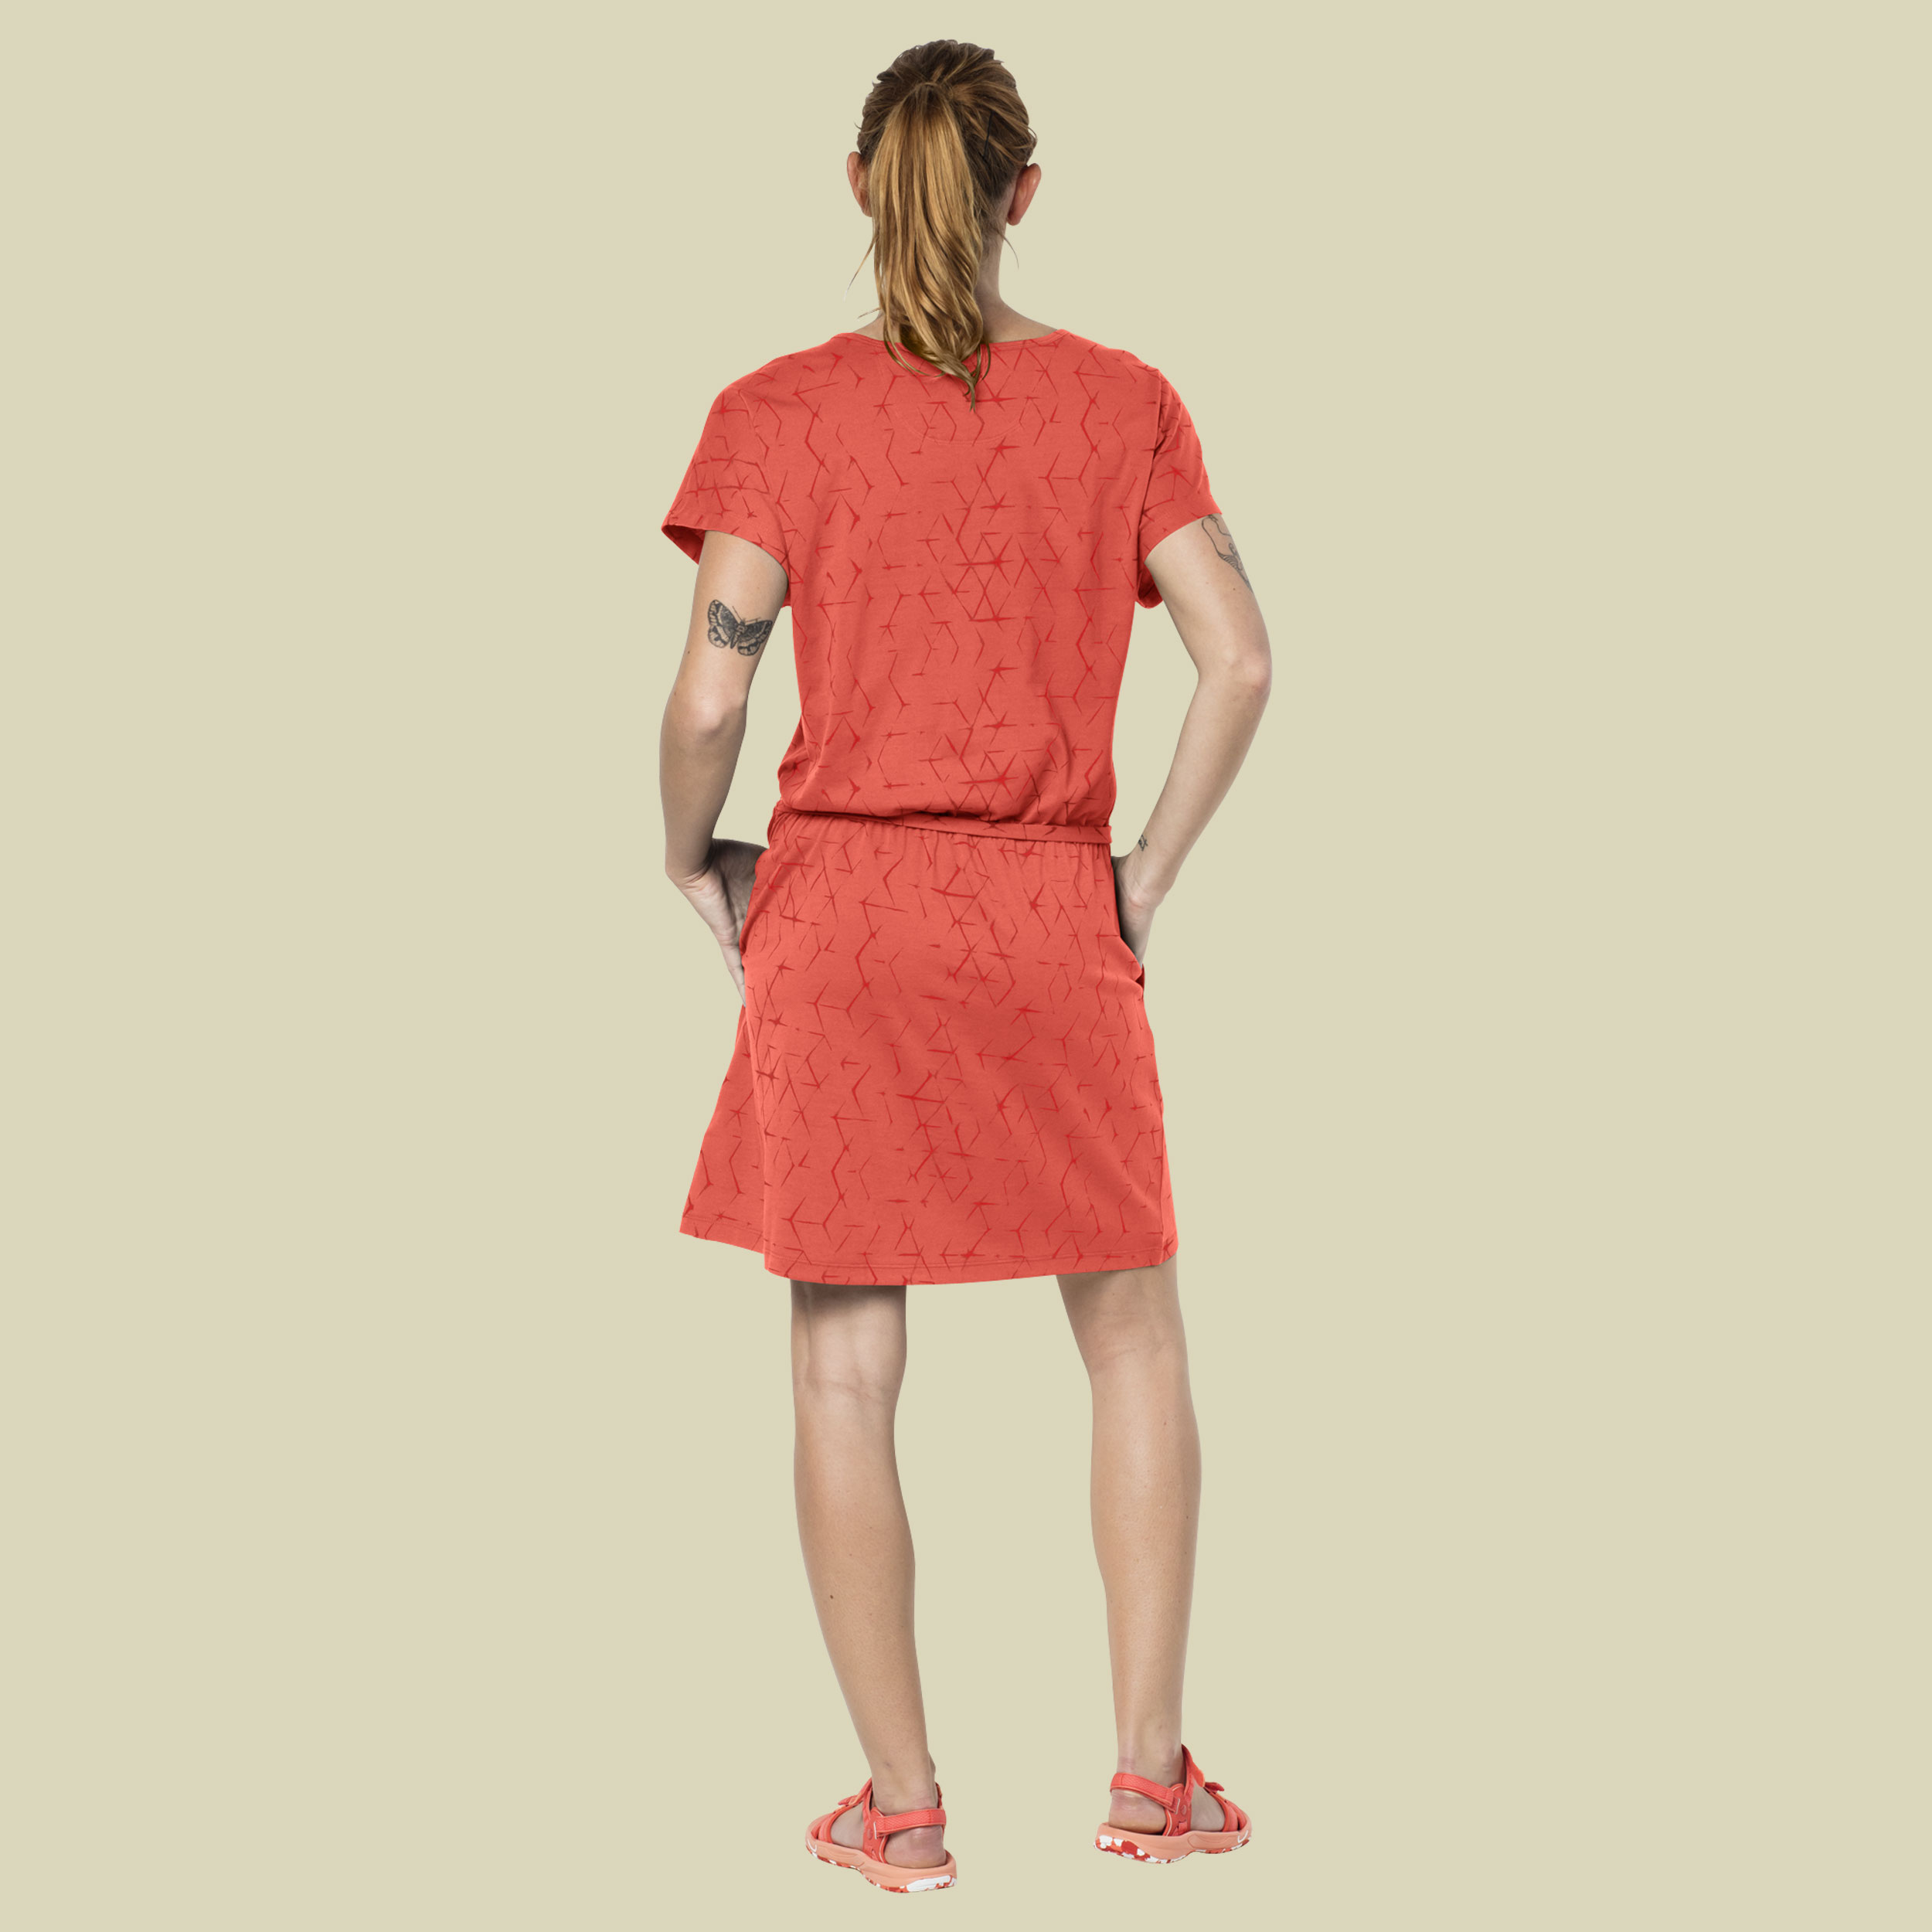 Shibori Dress Women Größe S Farbe hot coral all over